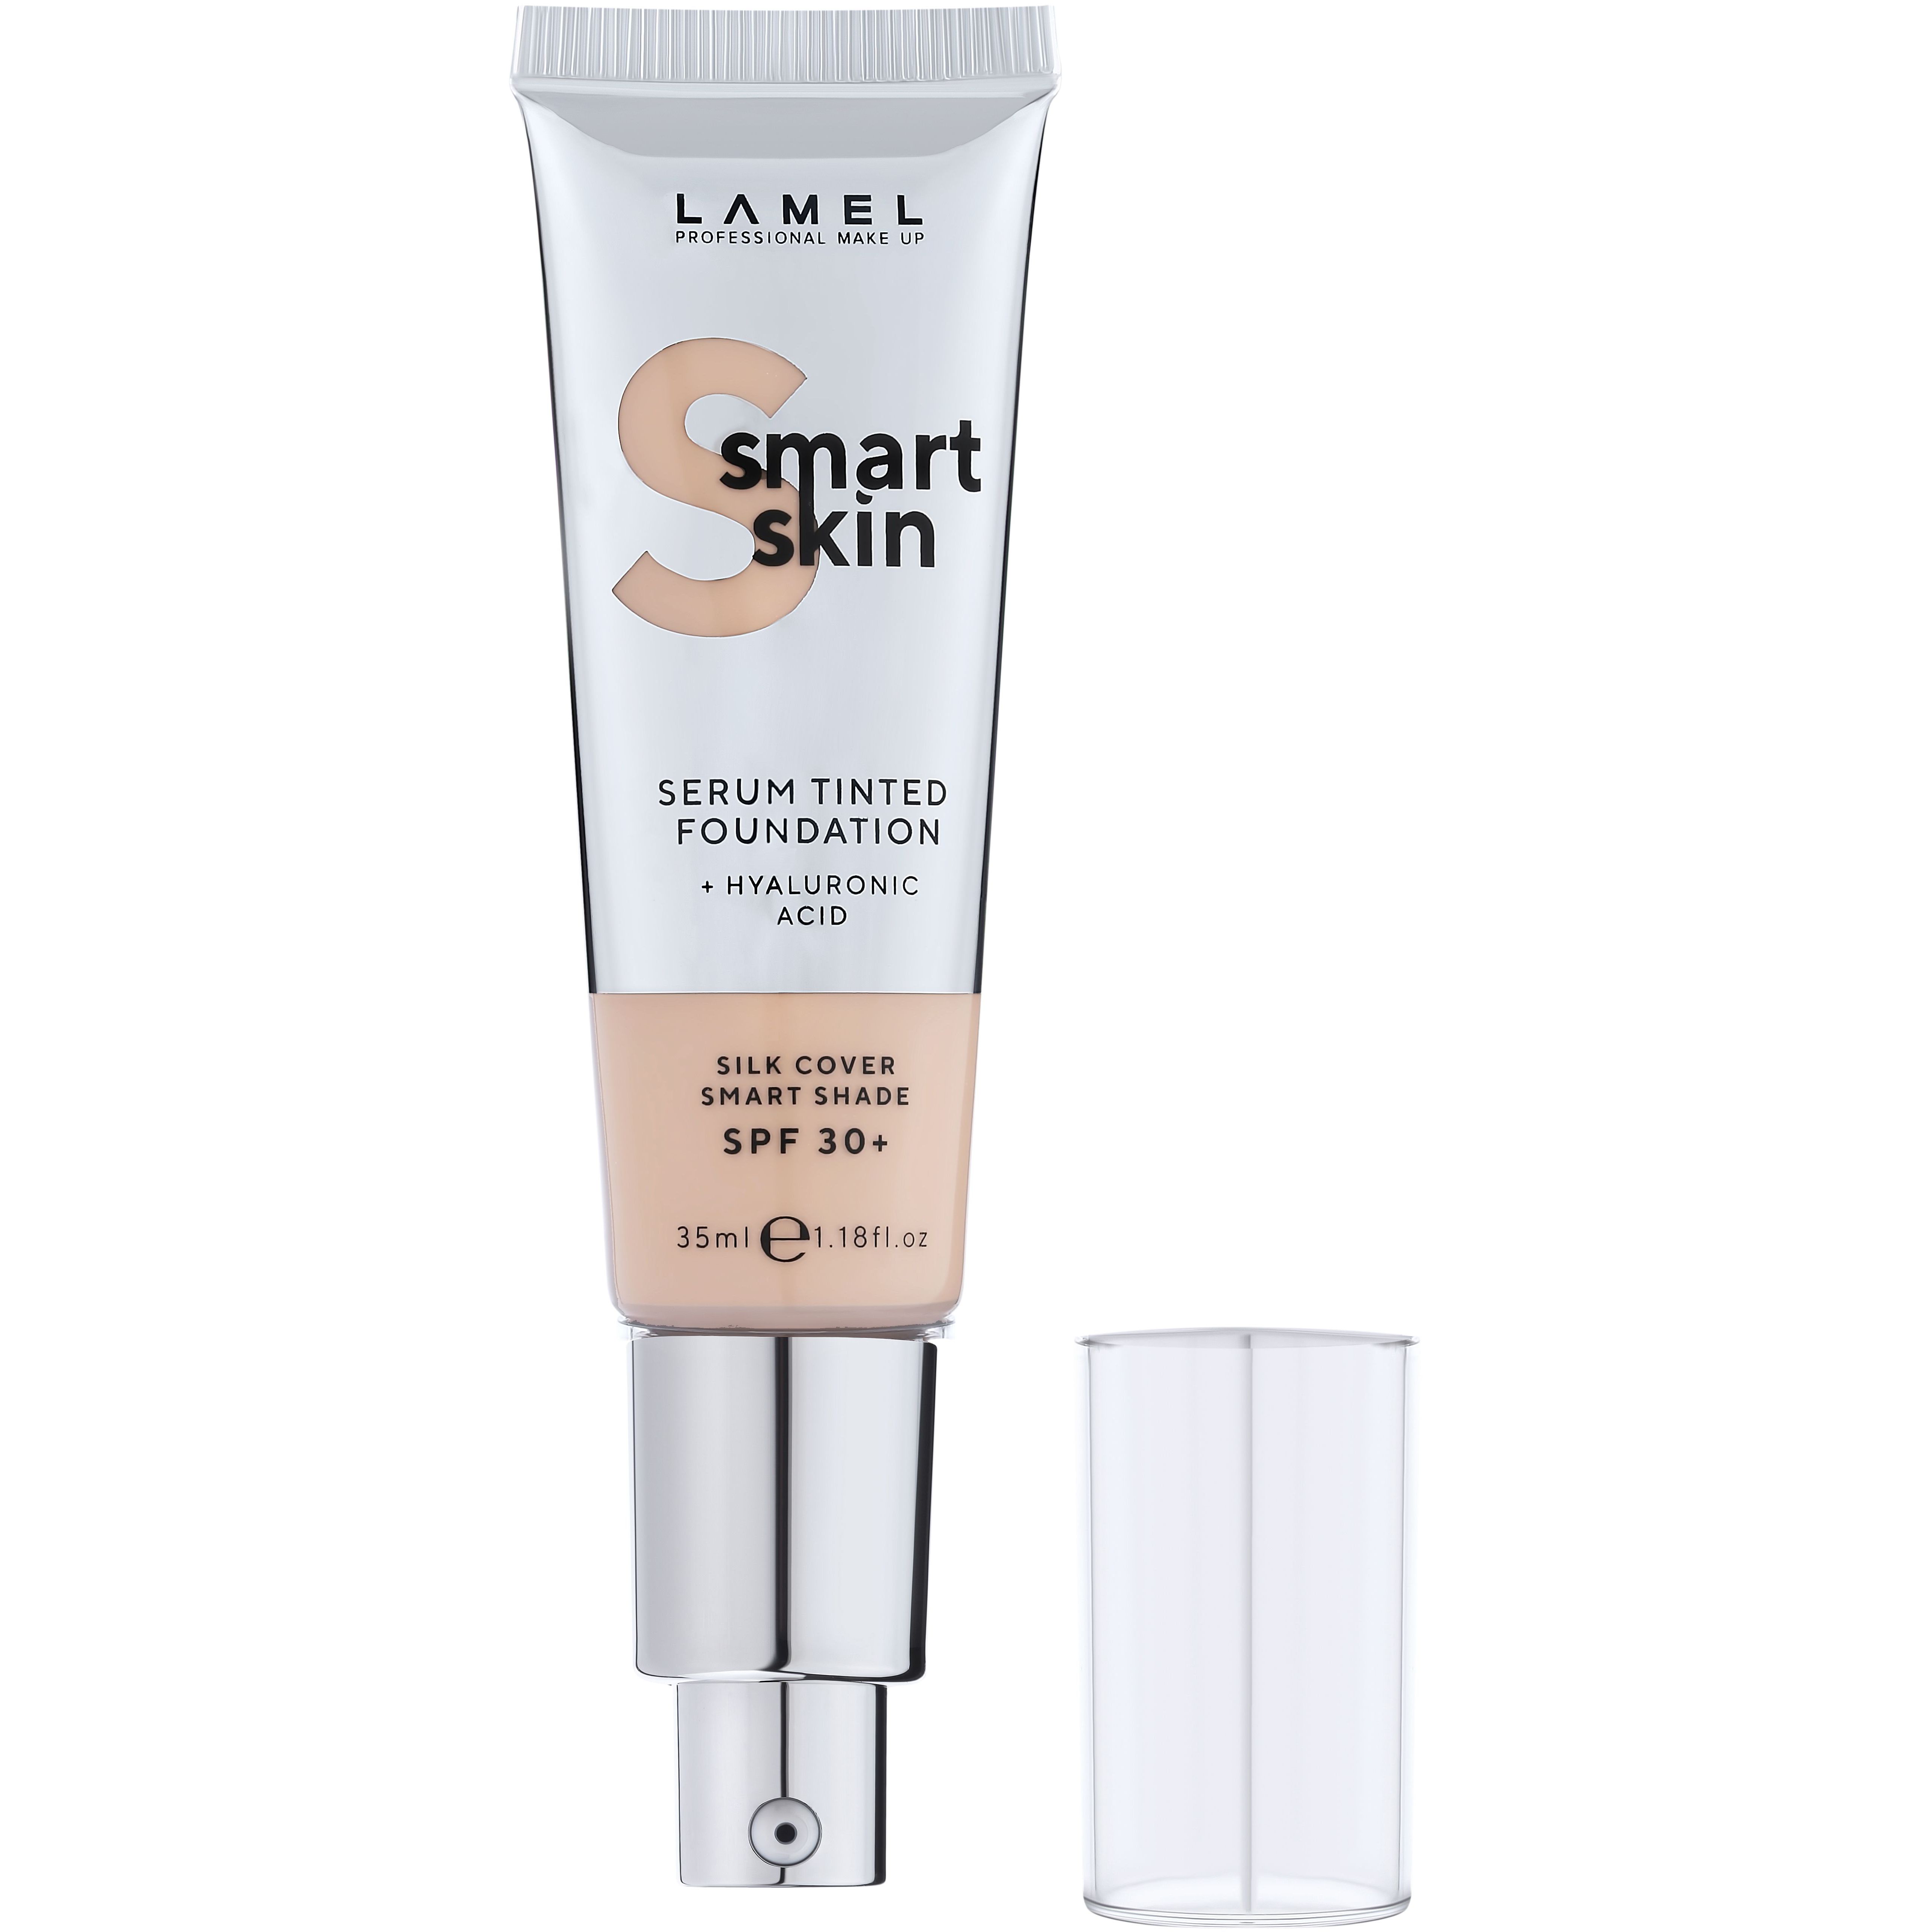 Тональная основа-сыворотка Lamel Smart Skin Serum Tinted Foundation тон 401, 35 мл - фото 3